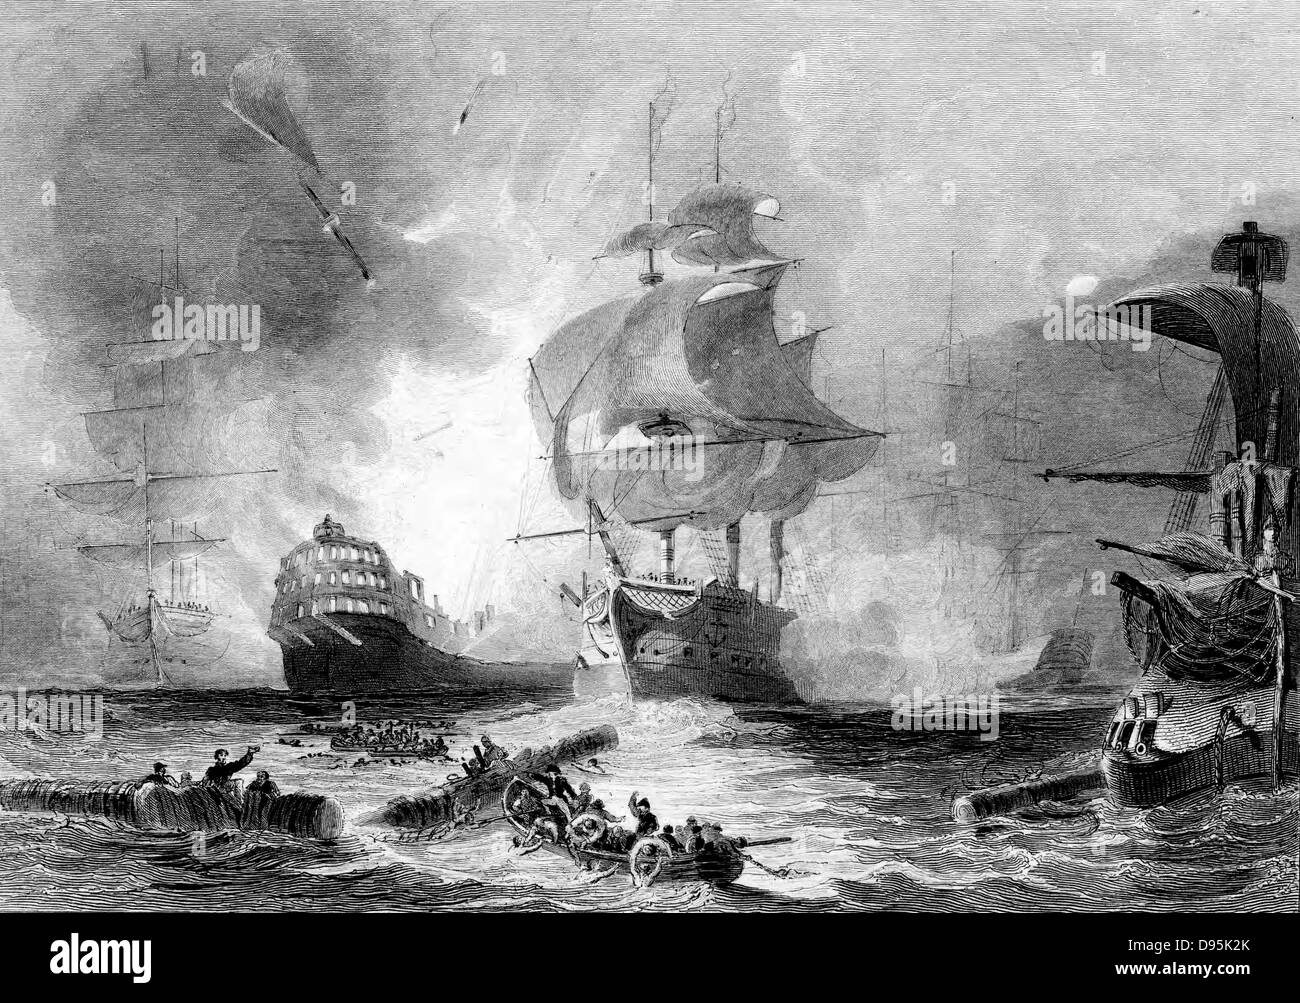 Kampf der Nil, 1. August 1798. Englische Flotte unter Nelson zerstört französische Flotte in Abuokir oder Abu Qir Bay. Kampf in der Nacht. Französische Schiff "L'Orient" um 10 Uhr explodieren. Gravur Stockfoto